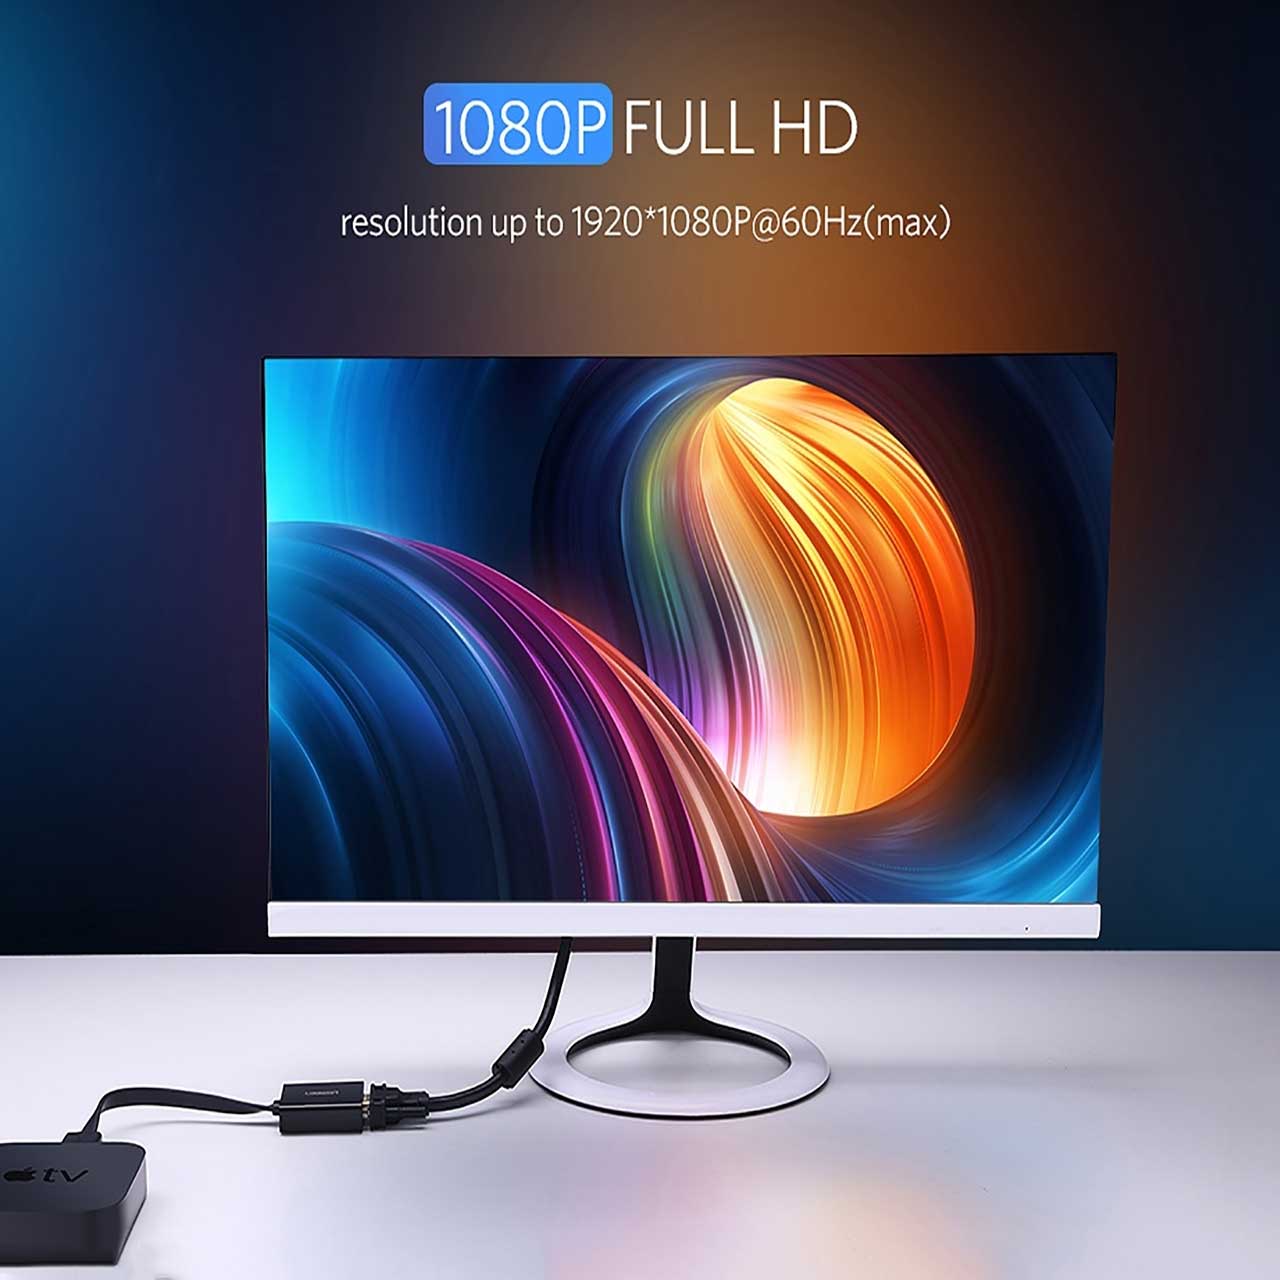 تبدیل HDMI به VGA حرفه ای برند UGREEN mm103 20248 یوگیرین